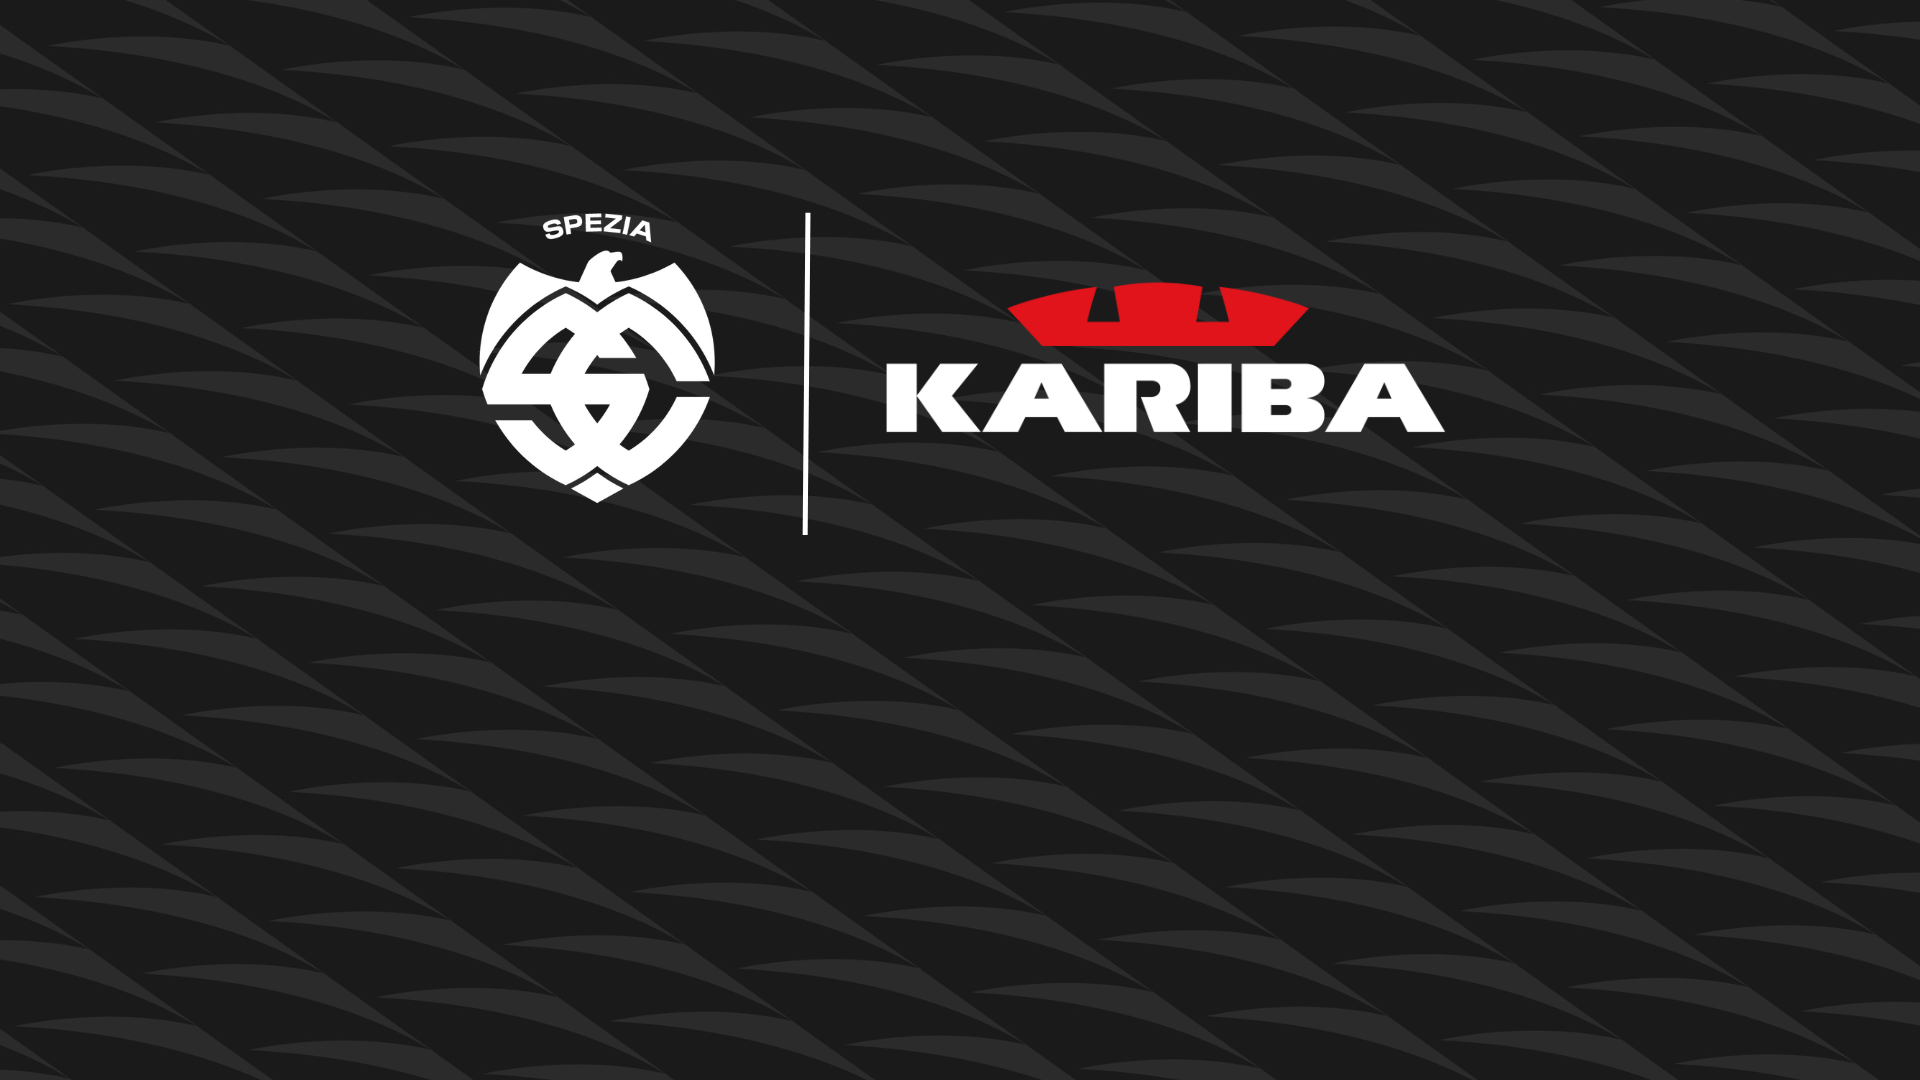 Kariba is confirmed as Top Sponsor again for the 2023/2025 biennium